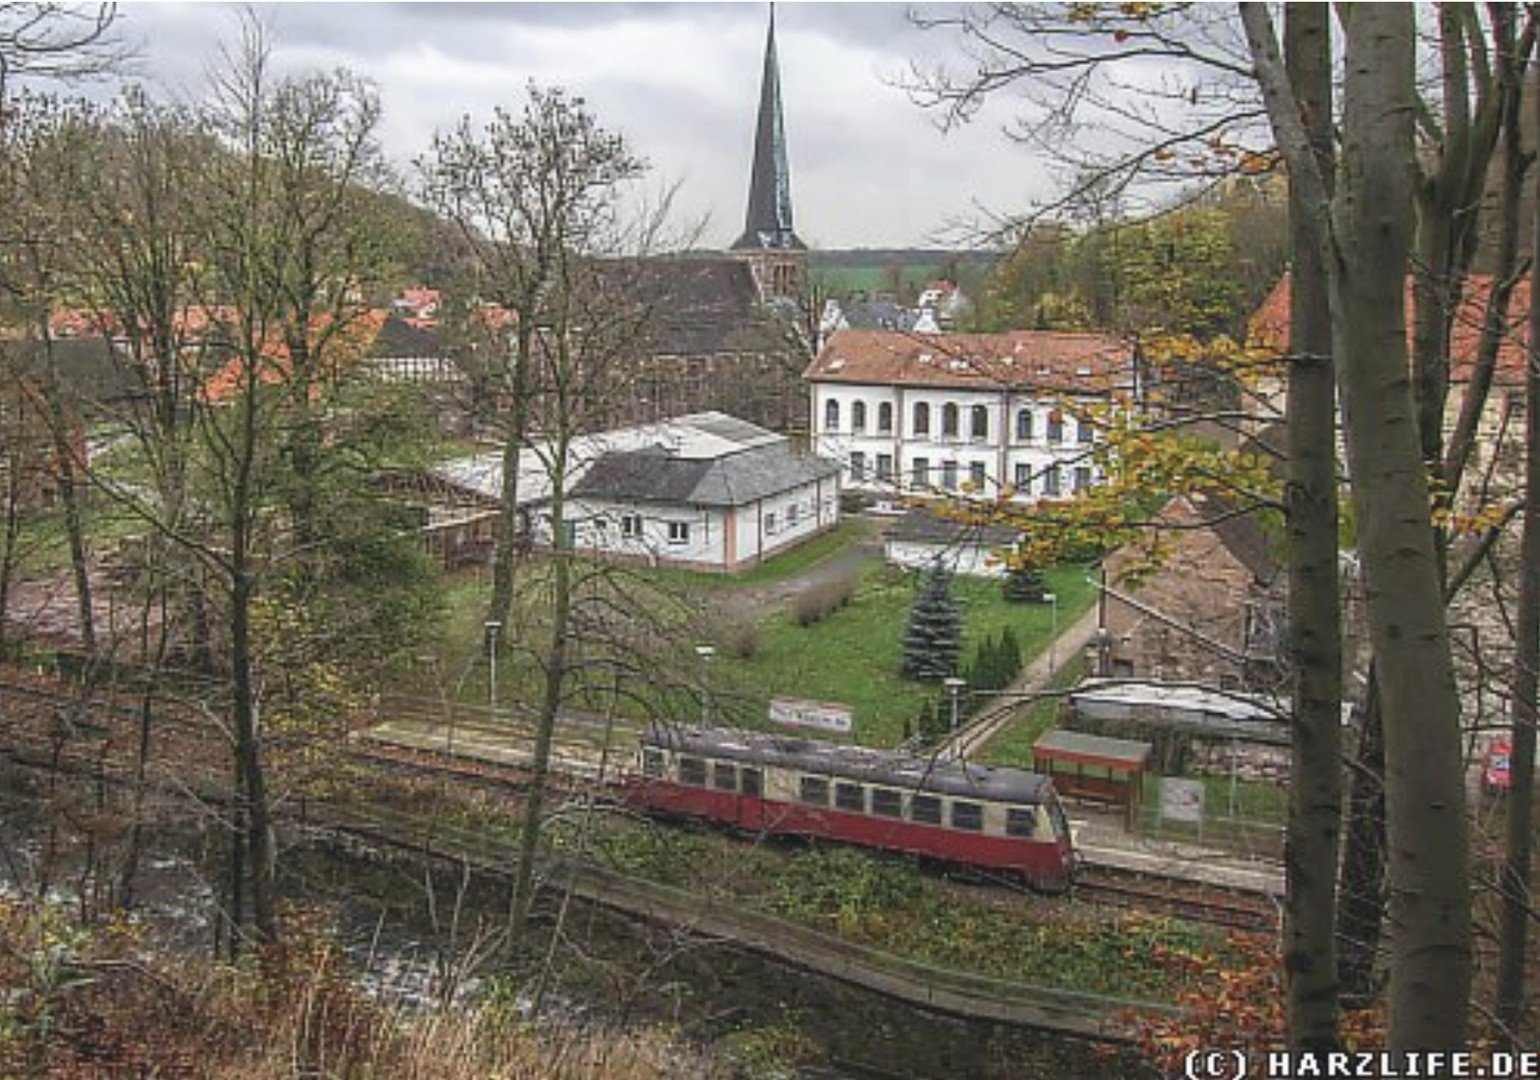 Harzbahn Nordhausen - Harz